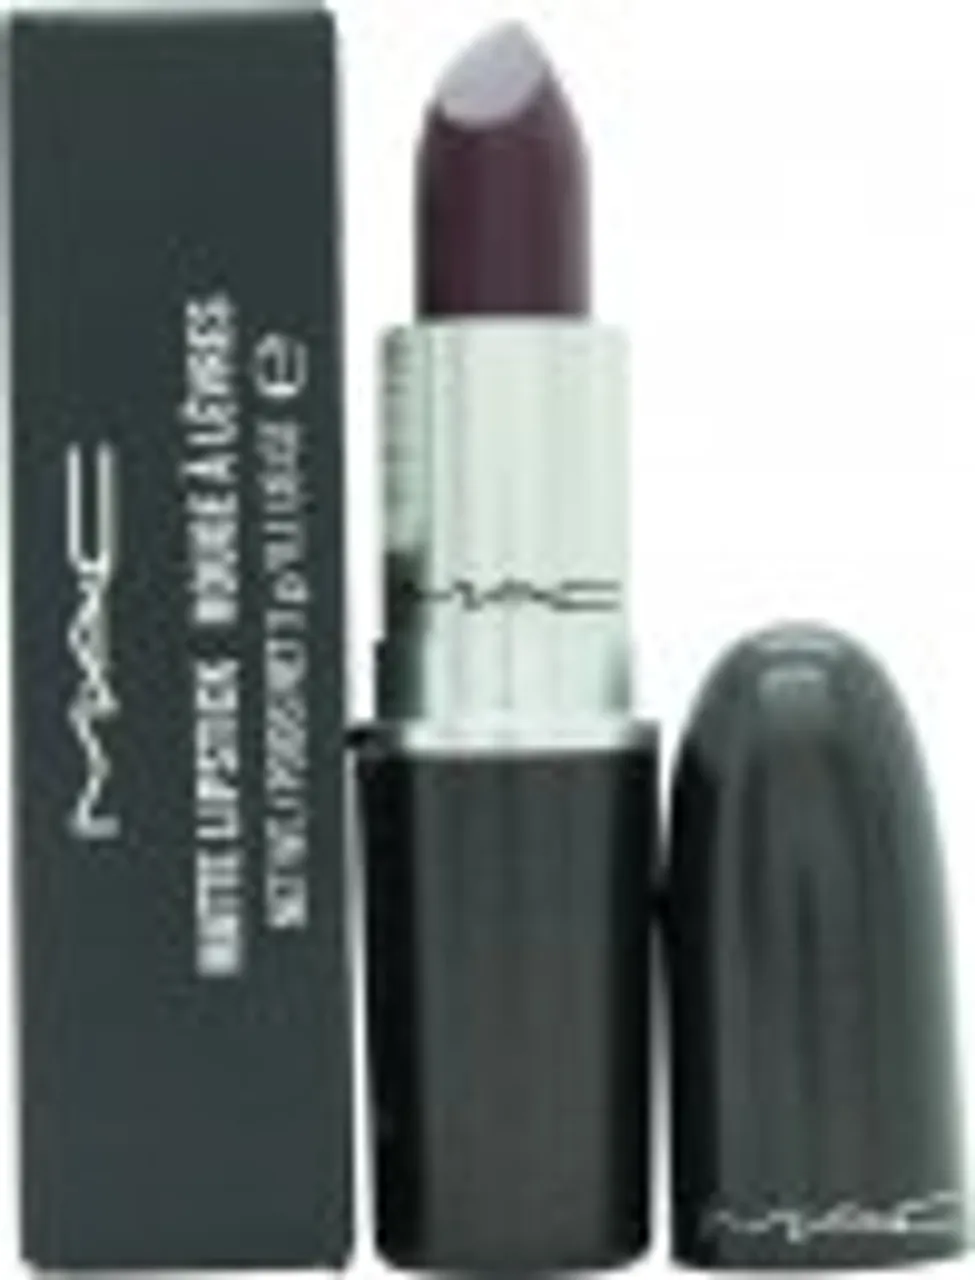 MAC Matte Lipstick 3g - Midnight Breeze